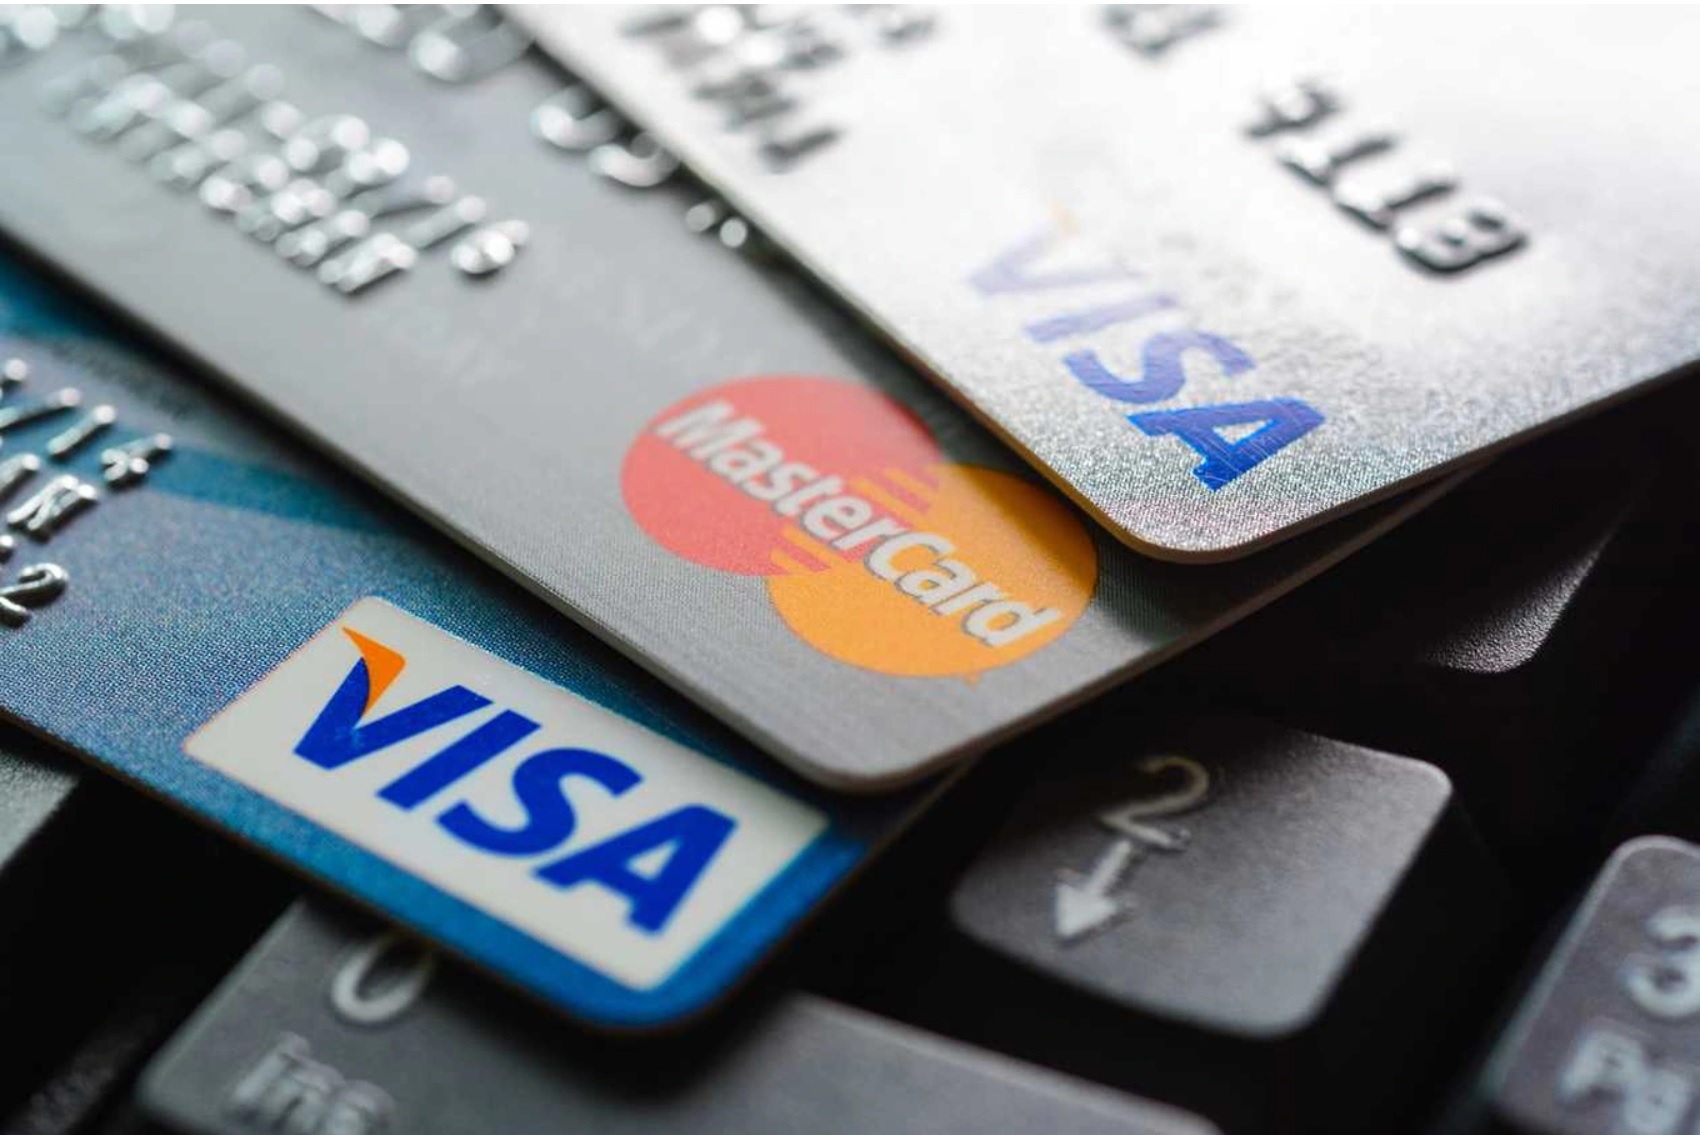 Nhiều chủ thẻ thường chi tiêu quá nhiều dẫn đến không có đủ khả năng trả nợ khi đến kì thanh toán (Ảnh: Time).